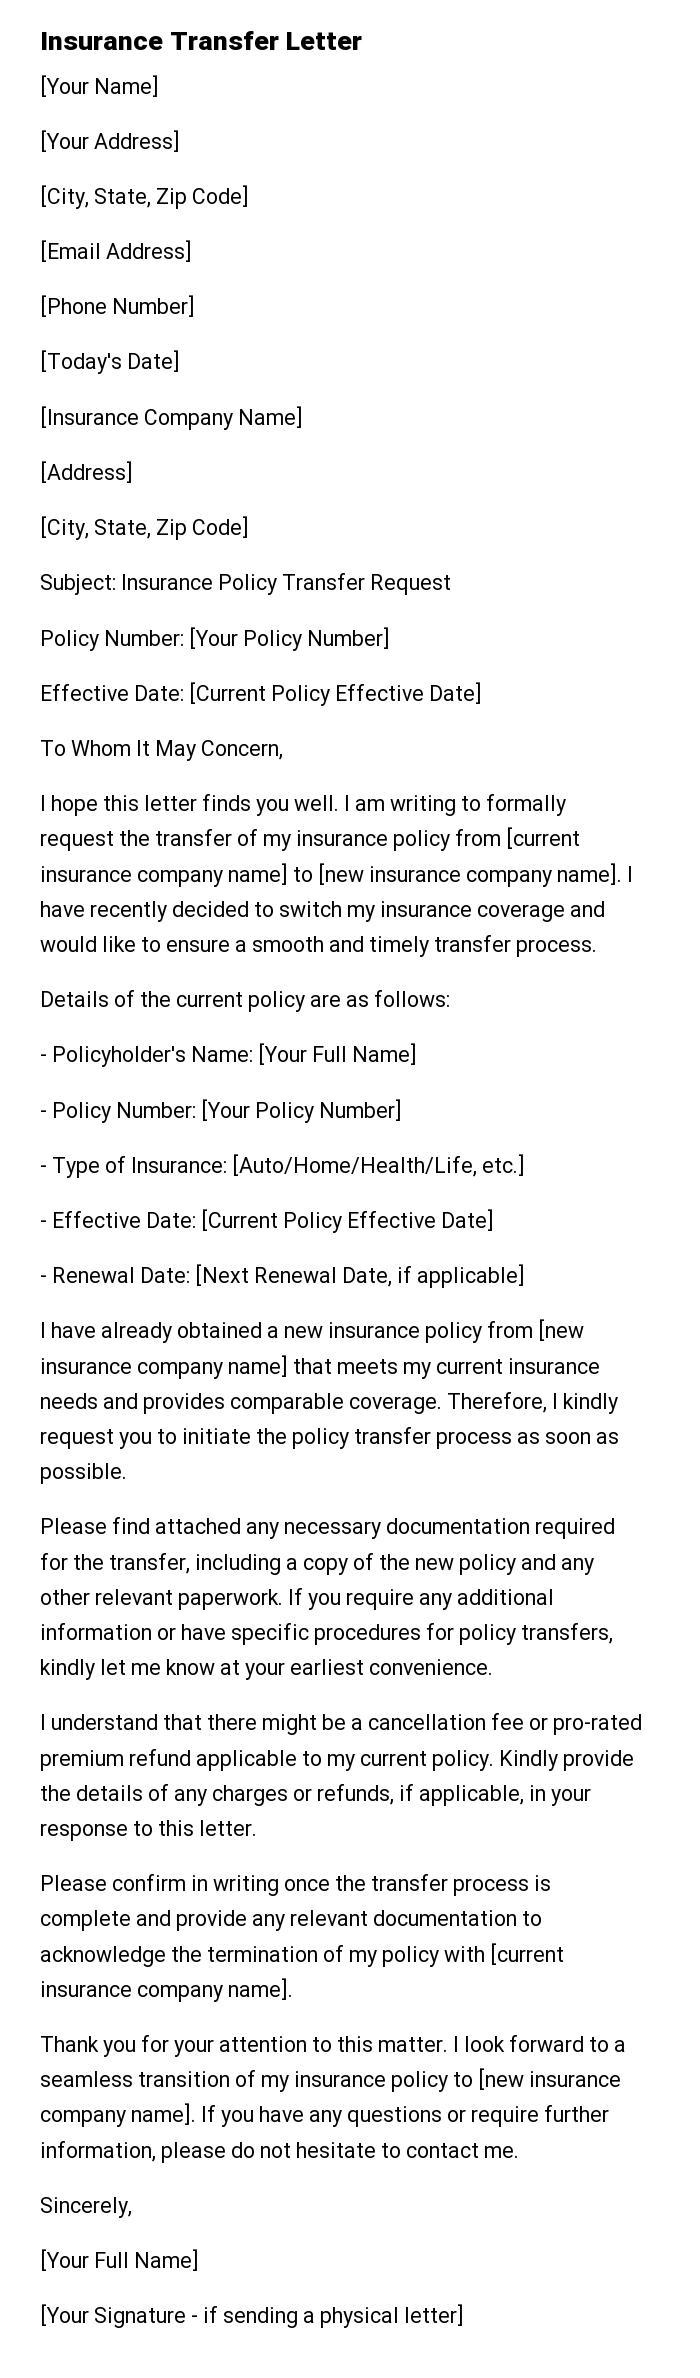 Insurance Transfer Letter